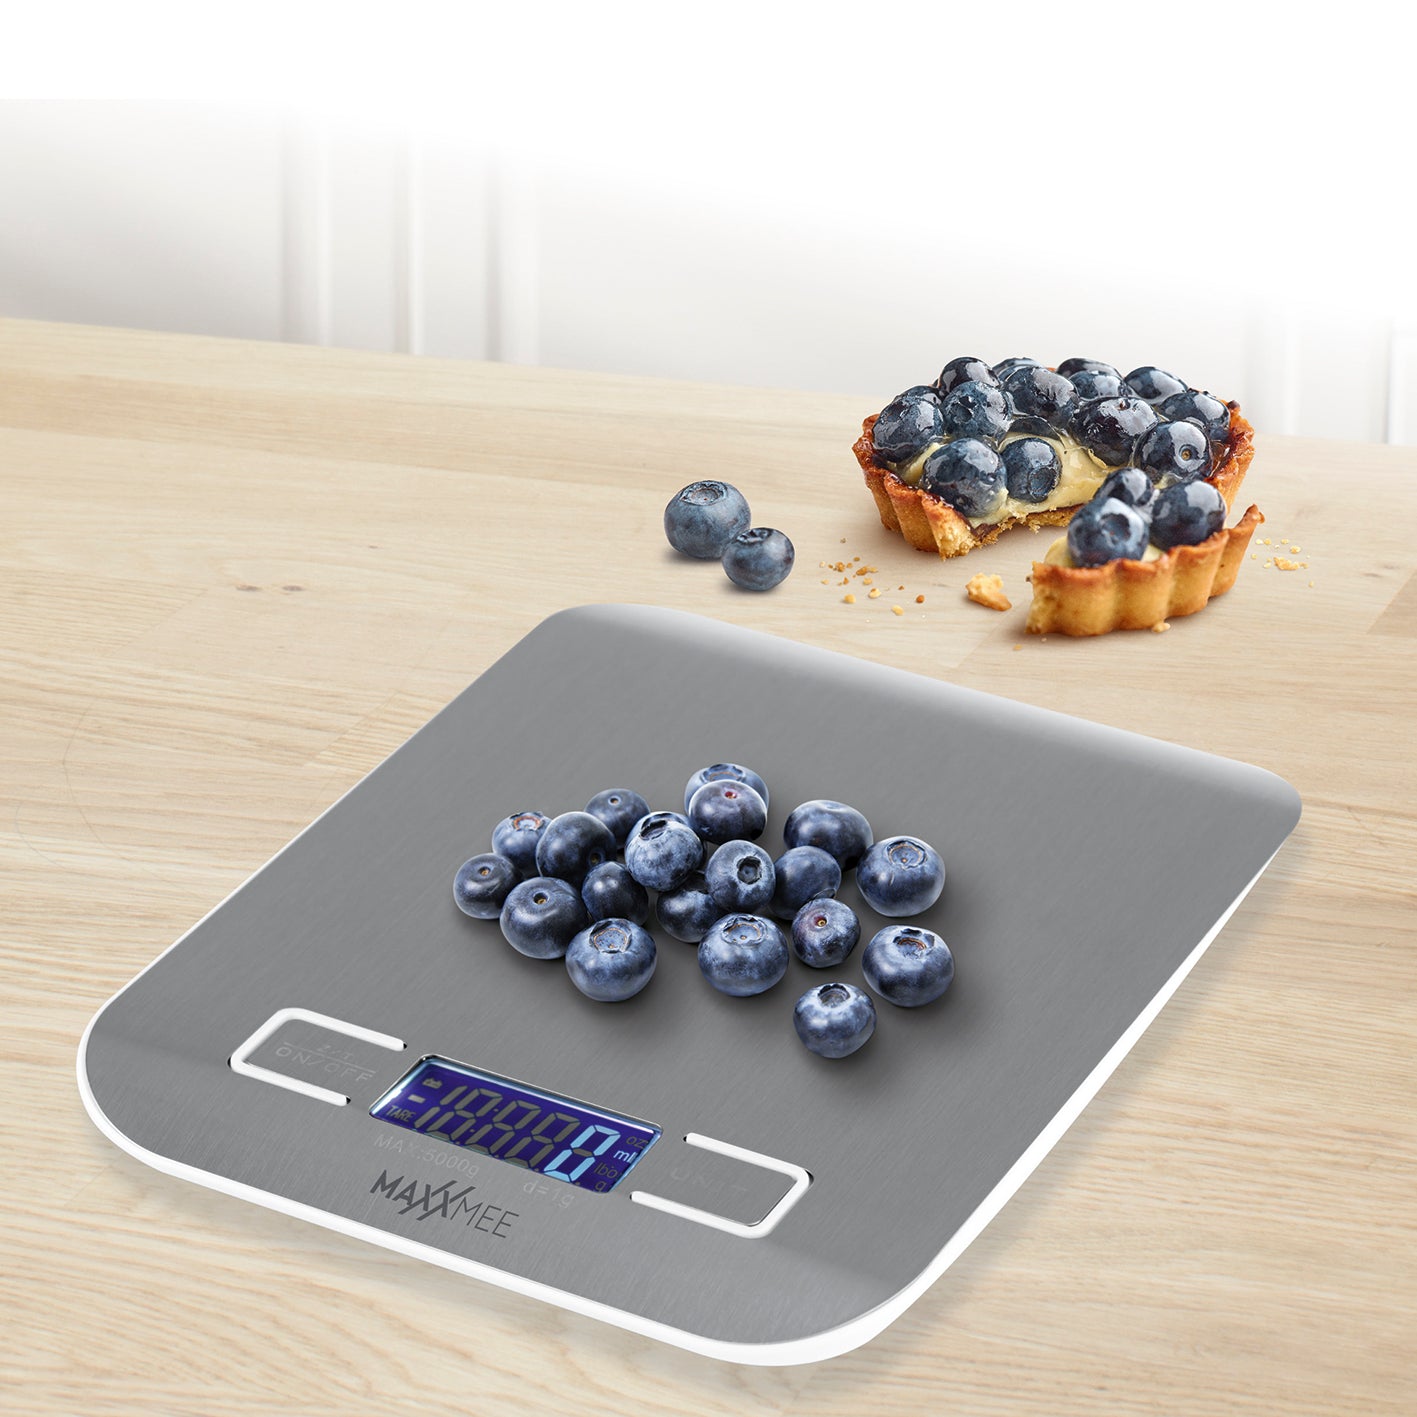 Digital-Küchenwaage - Grammgenaues Abwiegen von 1 g bis 5 kg - Edelstahl